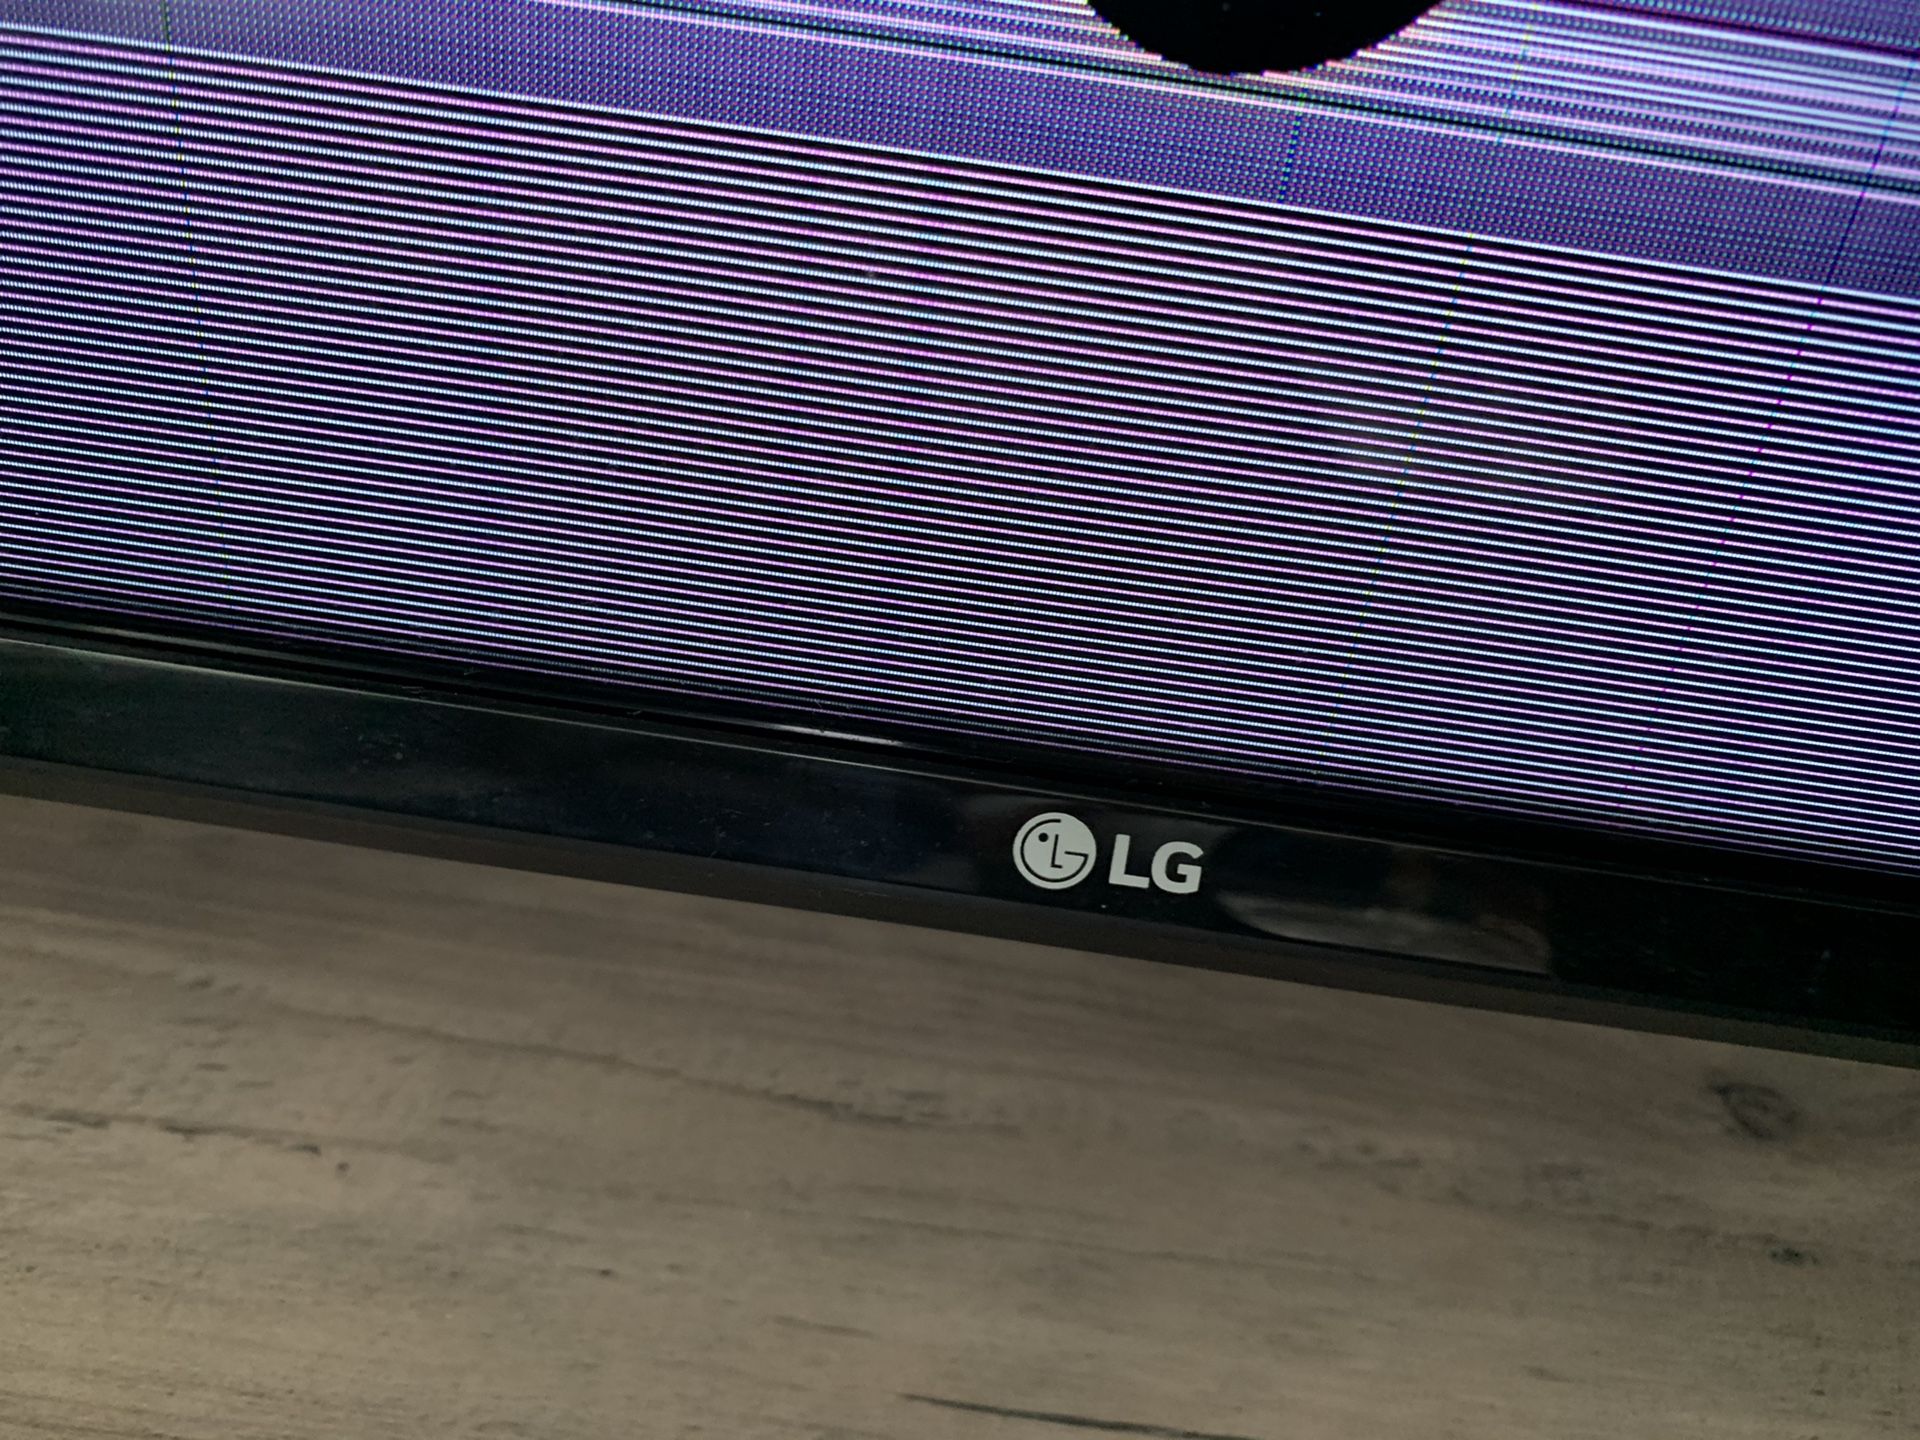 65 inch LG 4k UHD TV